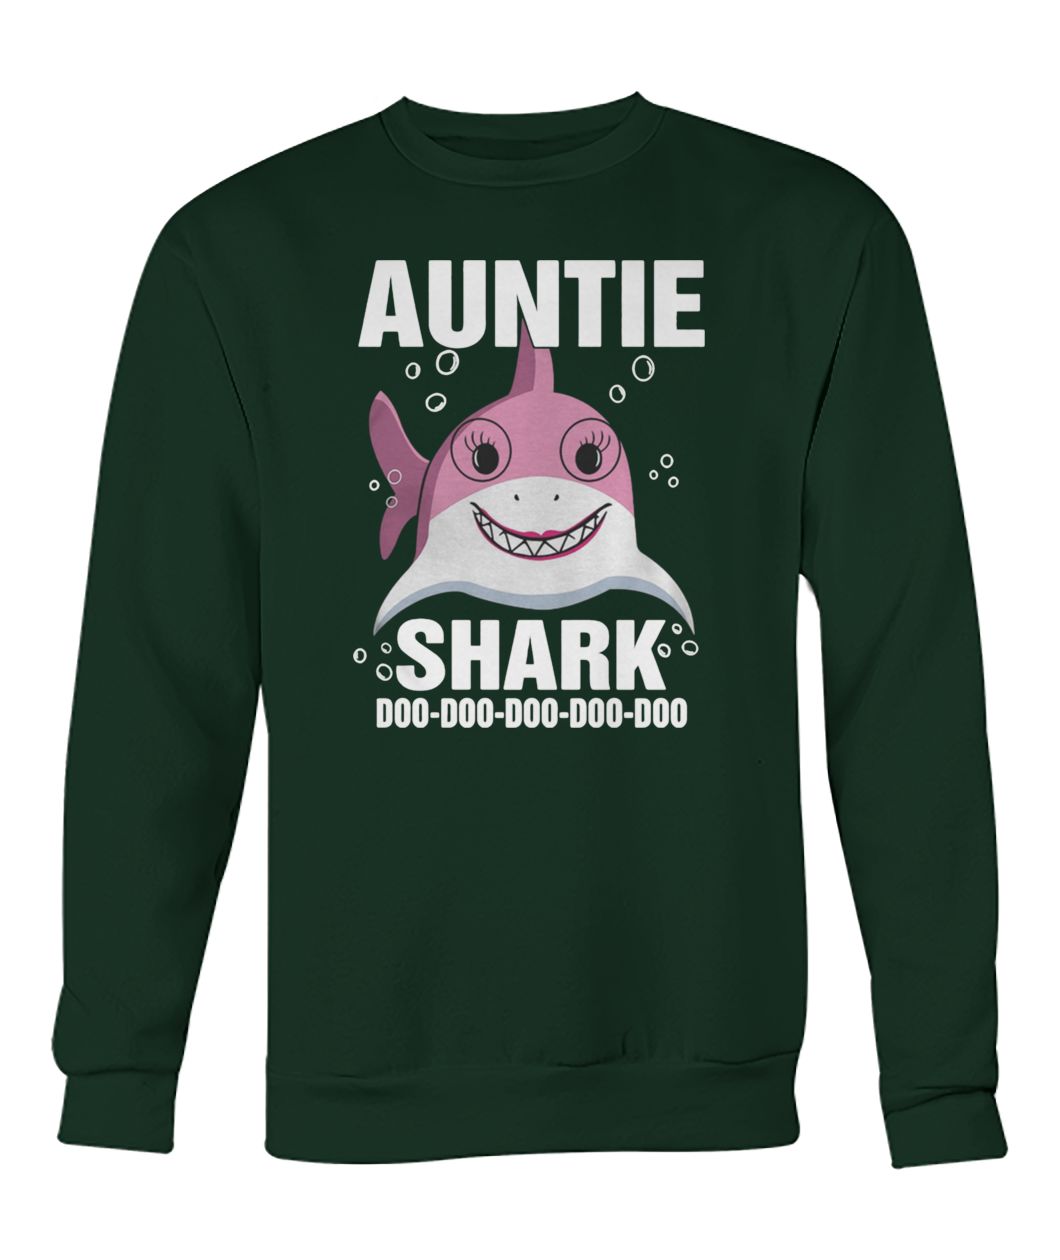 Auntie shark doo doo doo doo doo crew neck sweatshirt